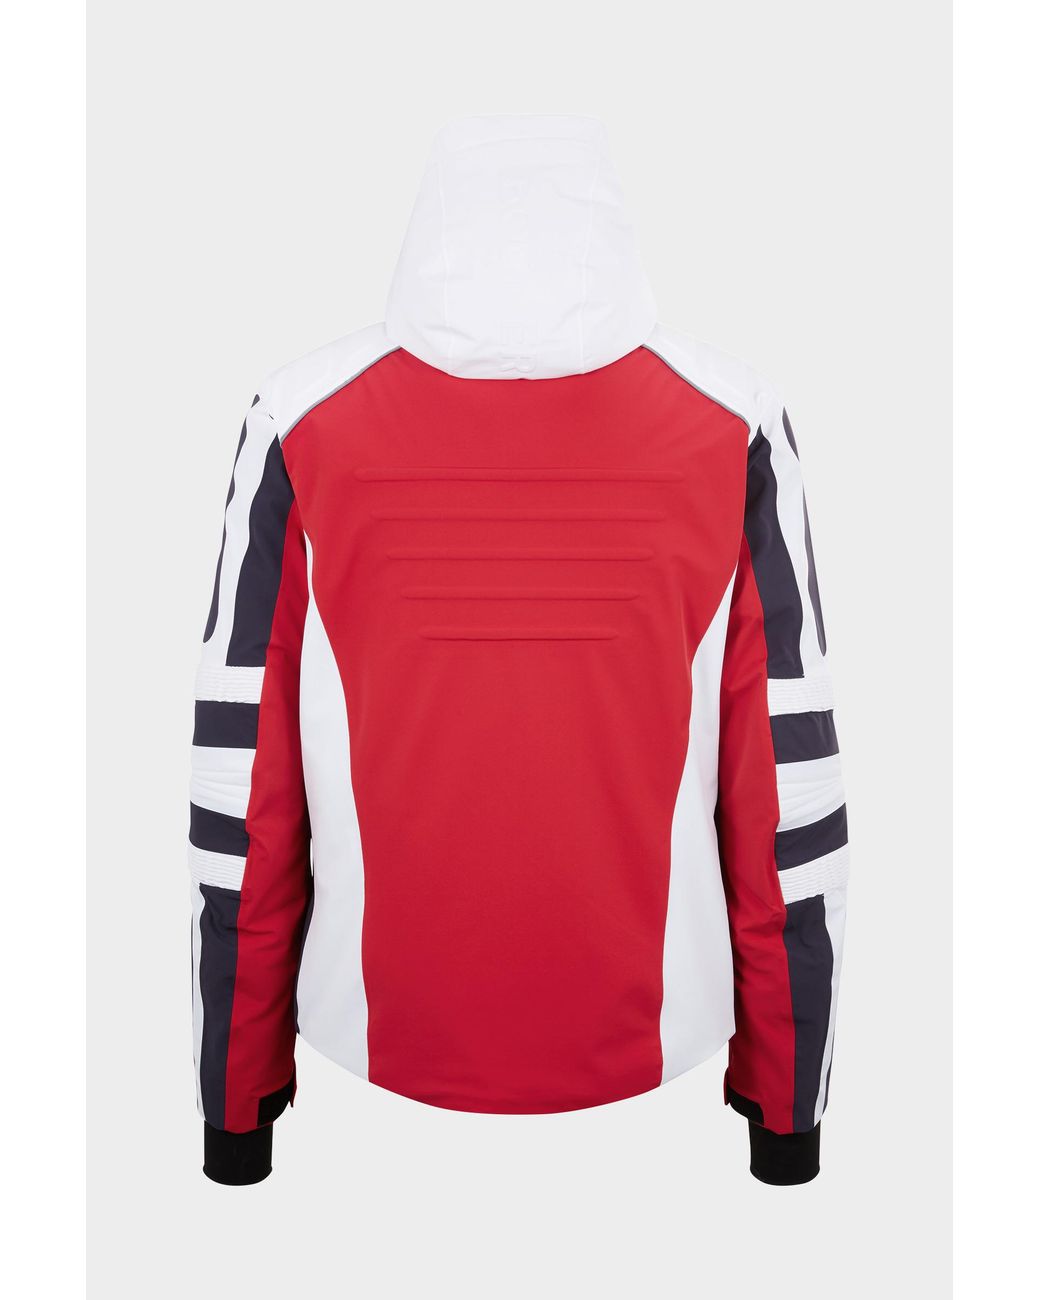 Bogner Kaleo Ski Jacket In Red/white/black for Men | Lyst Australia